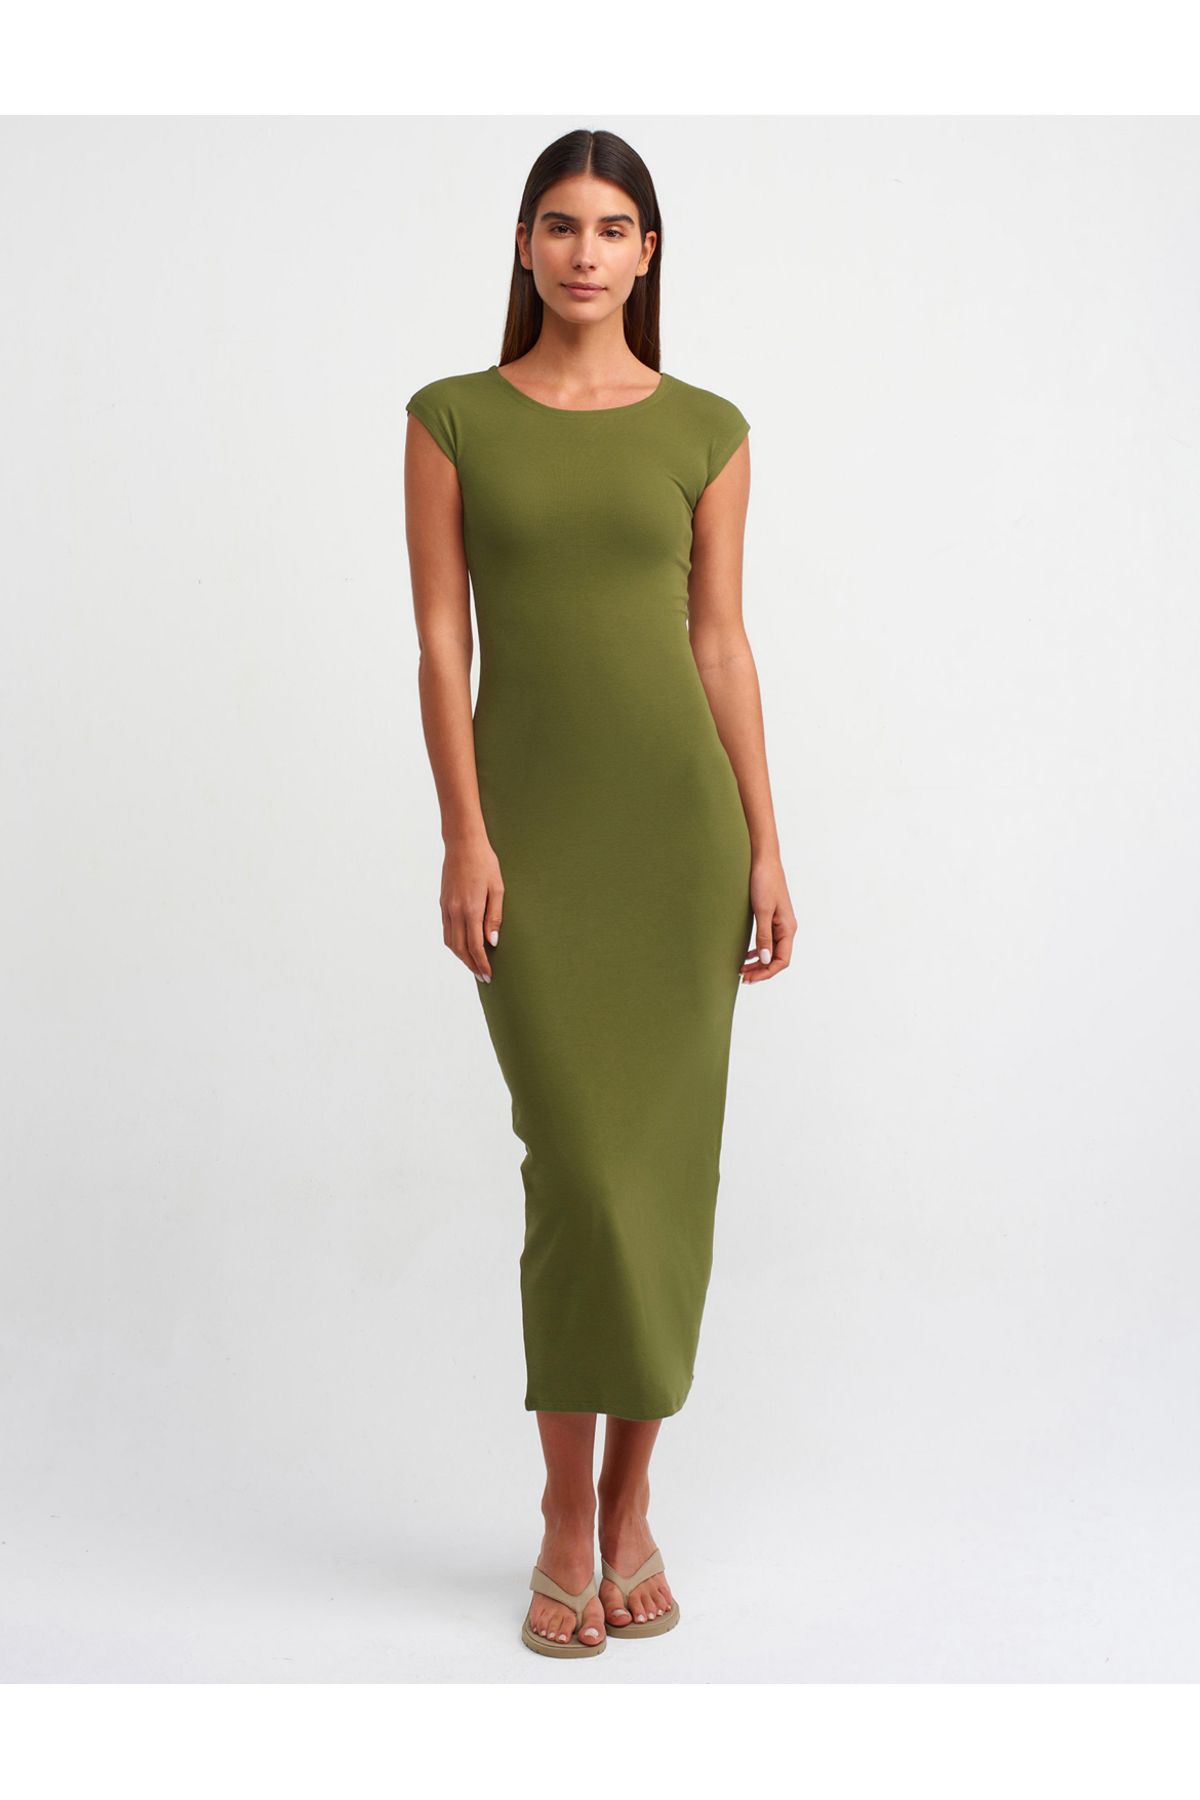 Dilvin Vücuda Oturan Premium Elbise Haki Yeşil